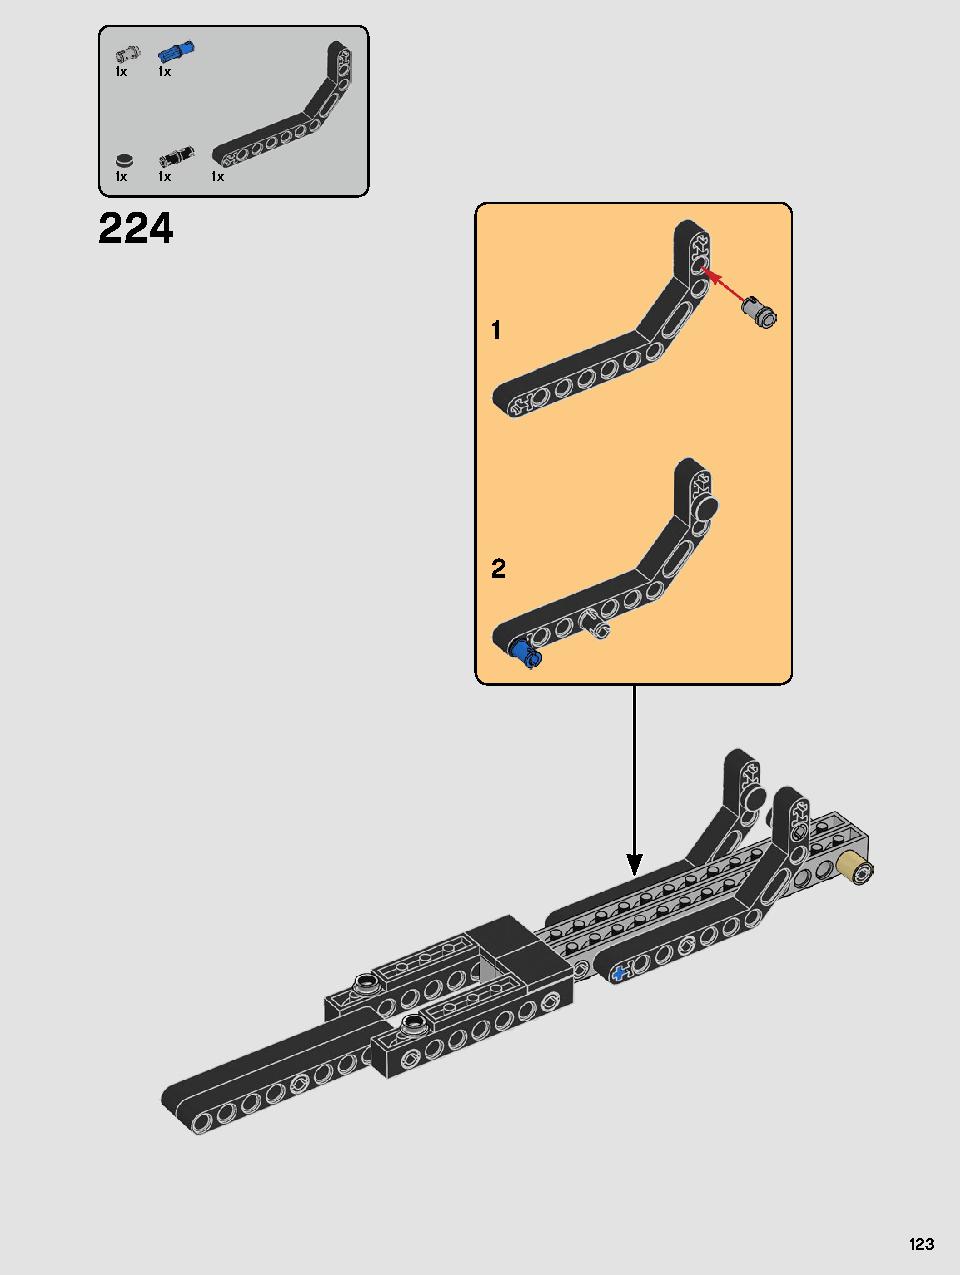 스타워즈 카일로 렌의 셔틀™ 75256 레고 세트 제품정보 레고 조립설명서 123 page